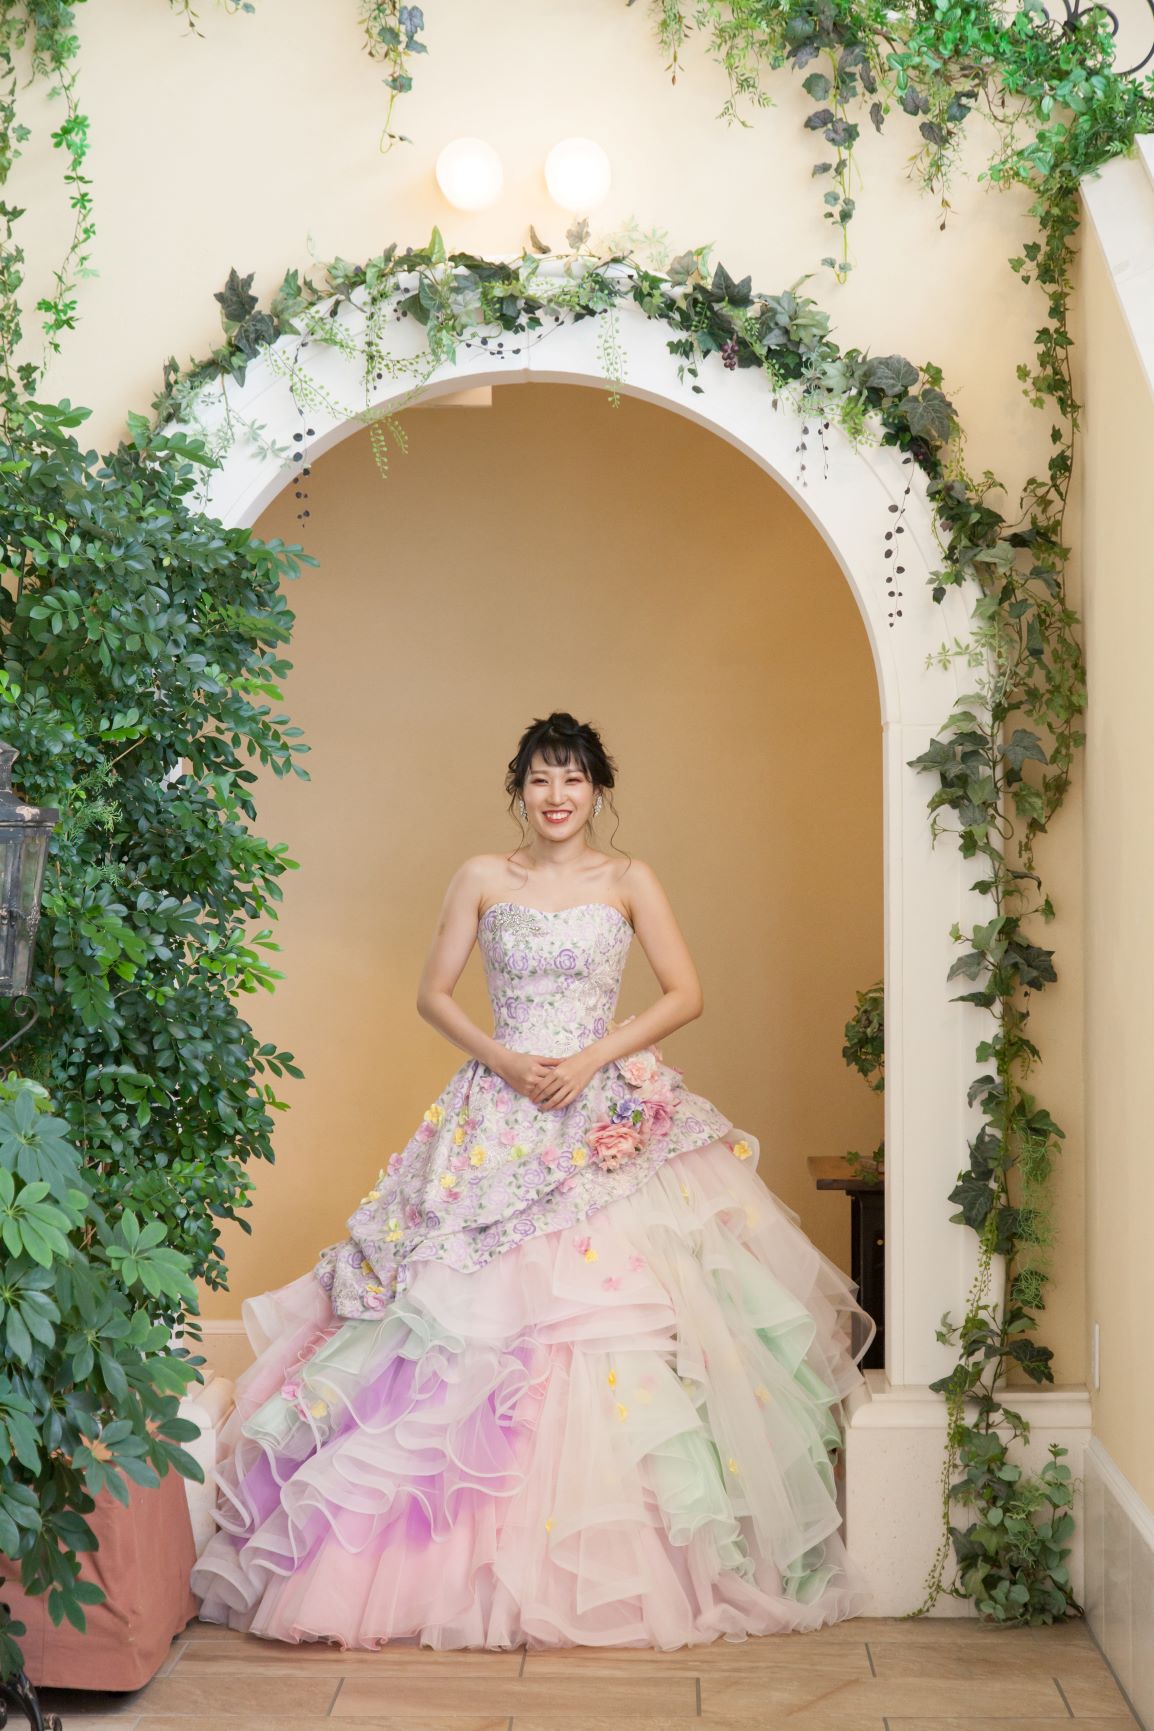 公式 横浜の結婚式場 モンテファーレ 成人式ドレス前撮りプラン が登場